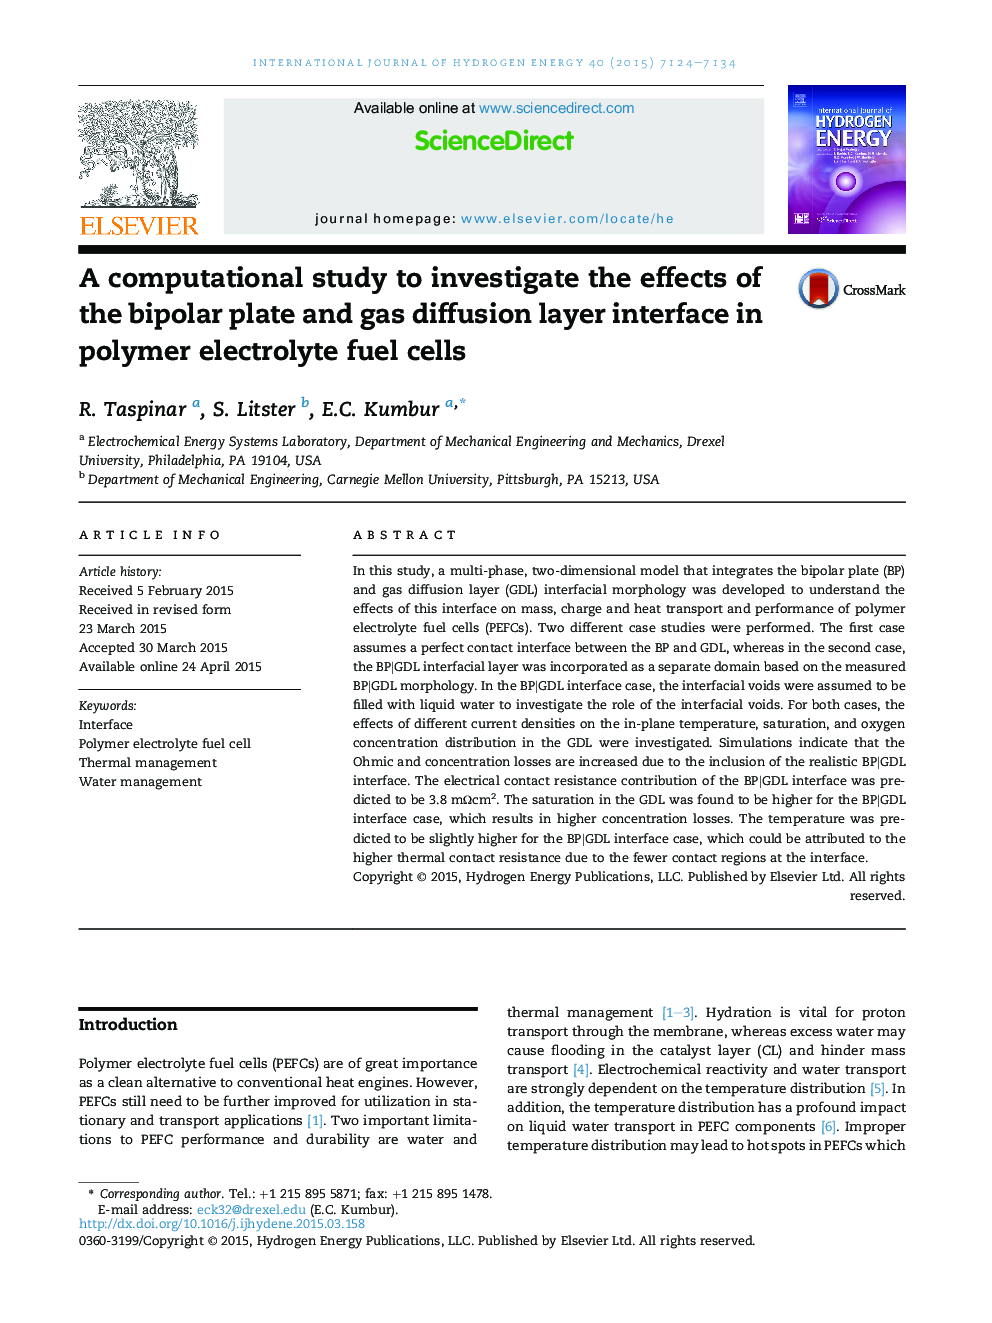 یک مطالعه محاسباتی برای بررسی اثرات صفحات دو قطبی و رابط لایه انتشار گاز در سلول های سوخت الکترولیت پلیمر 